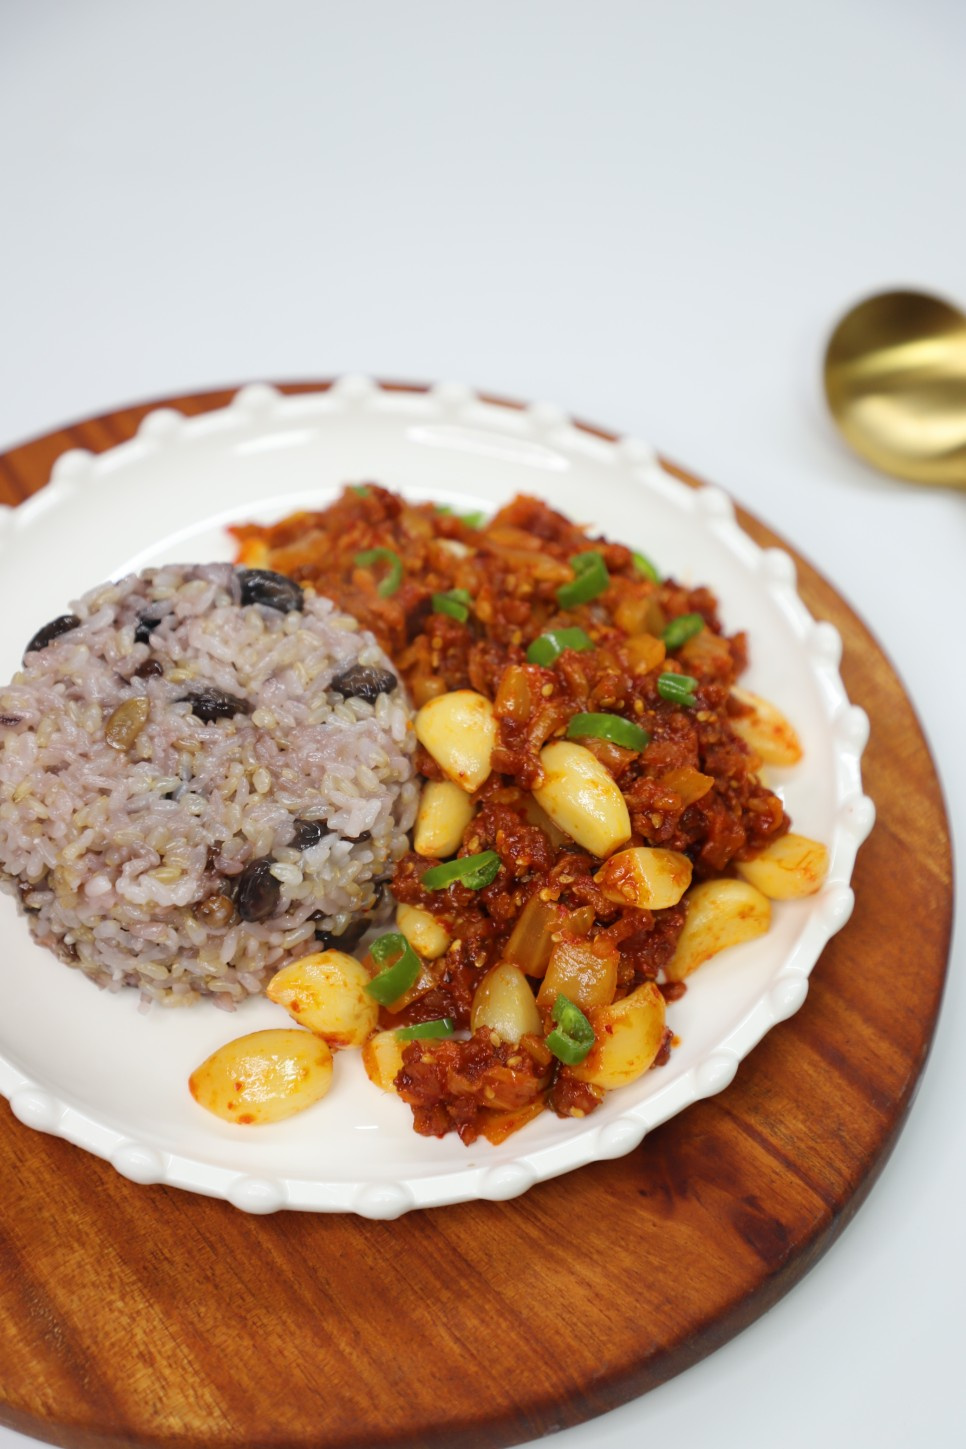 다진 돼지고기 김치 볶음 덮밥 한그릇 요리 저녁밥상